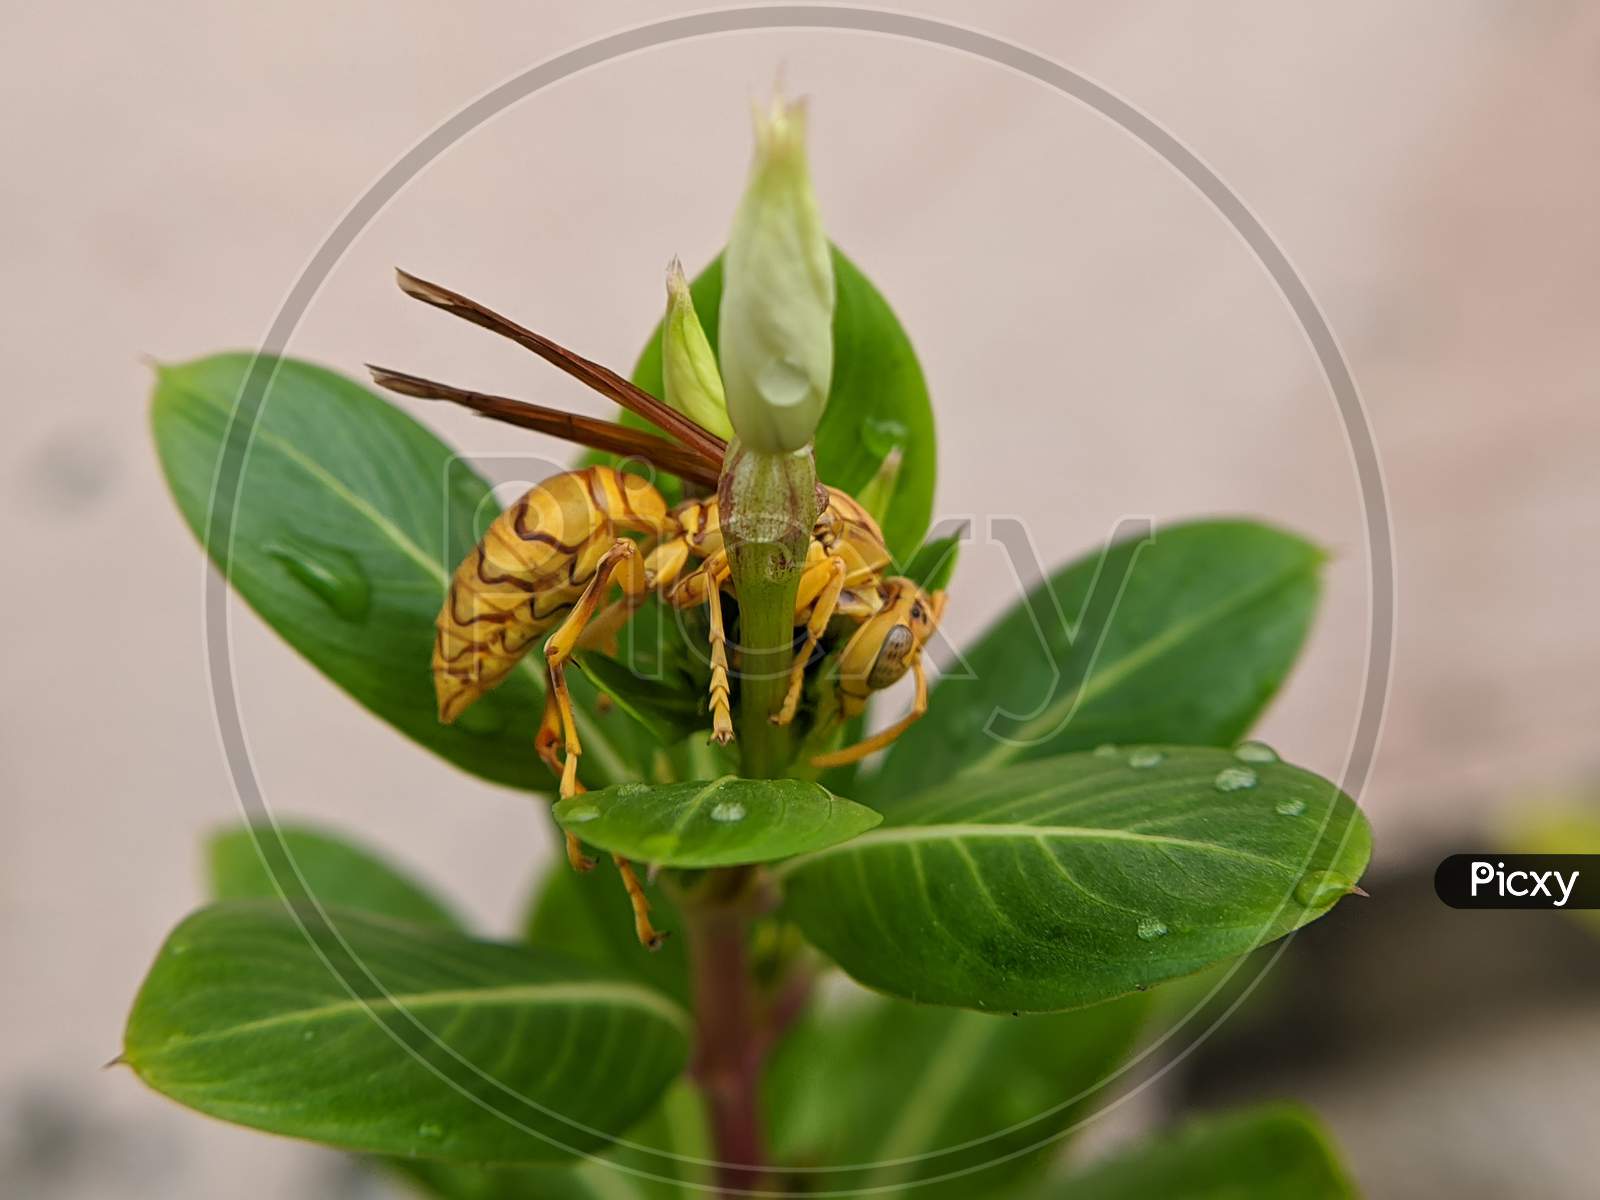 Golden fly rested on leaf